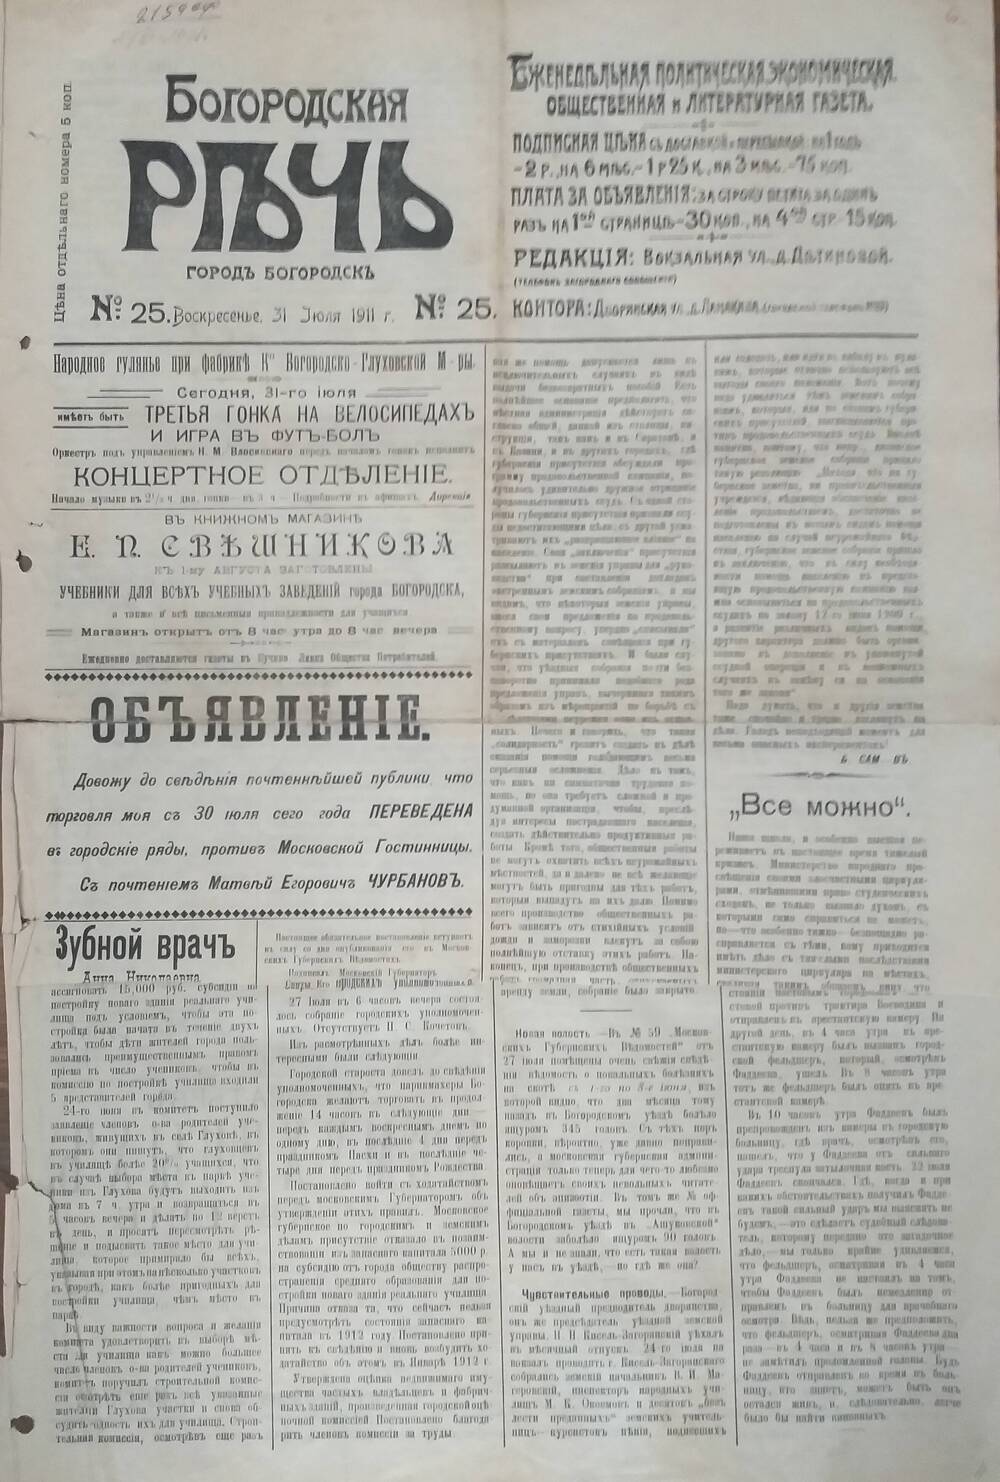 Газета Богородская речь № 25 от 31 июля 1911 года.